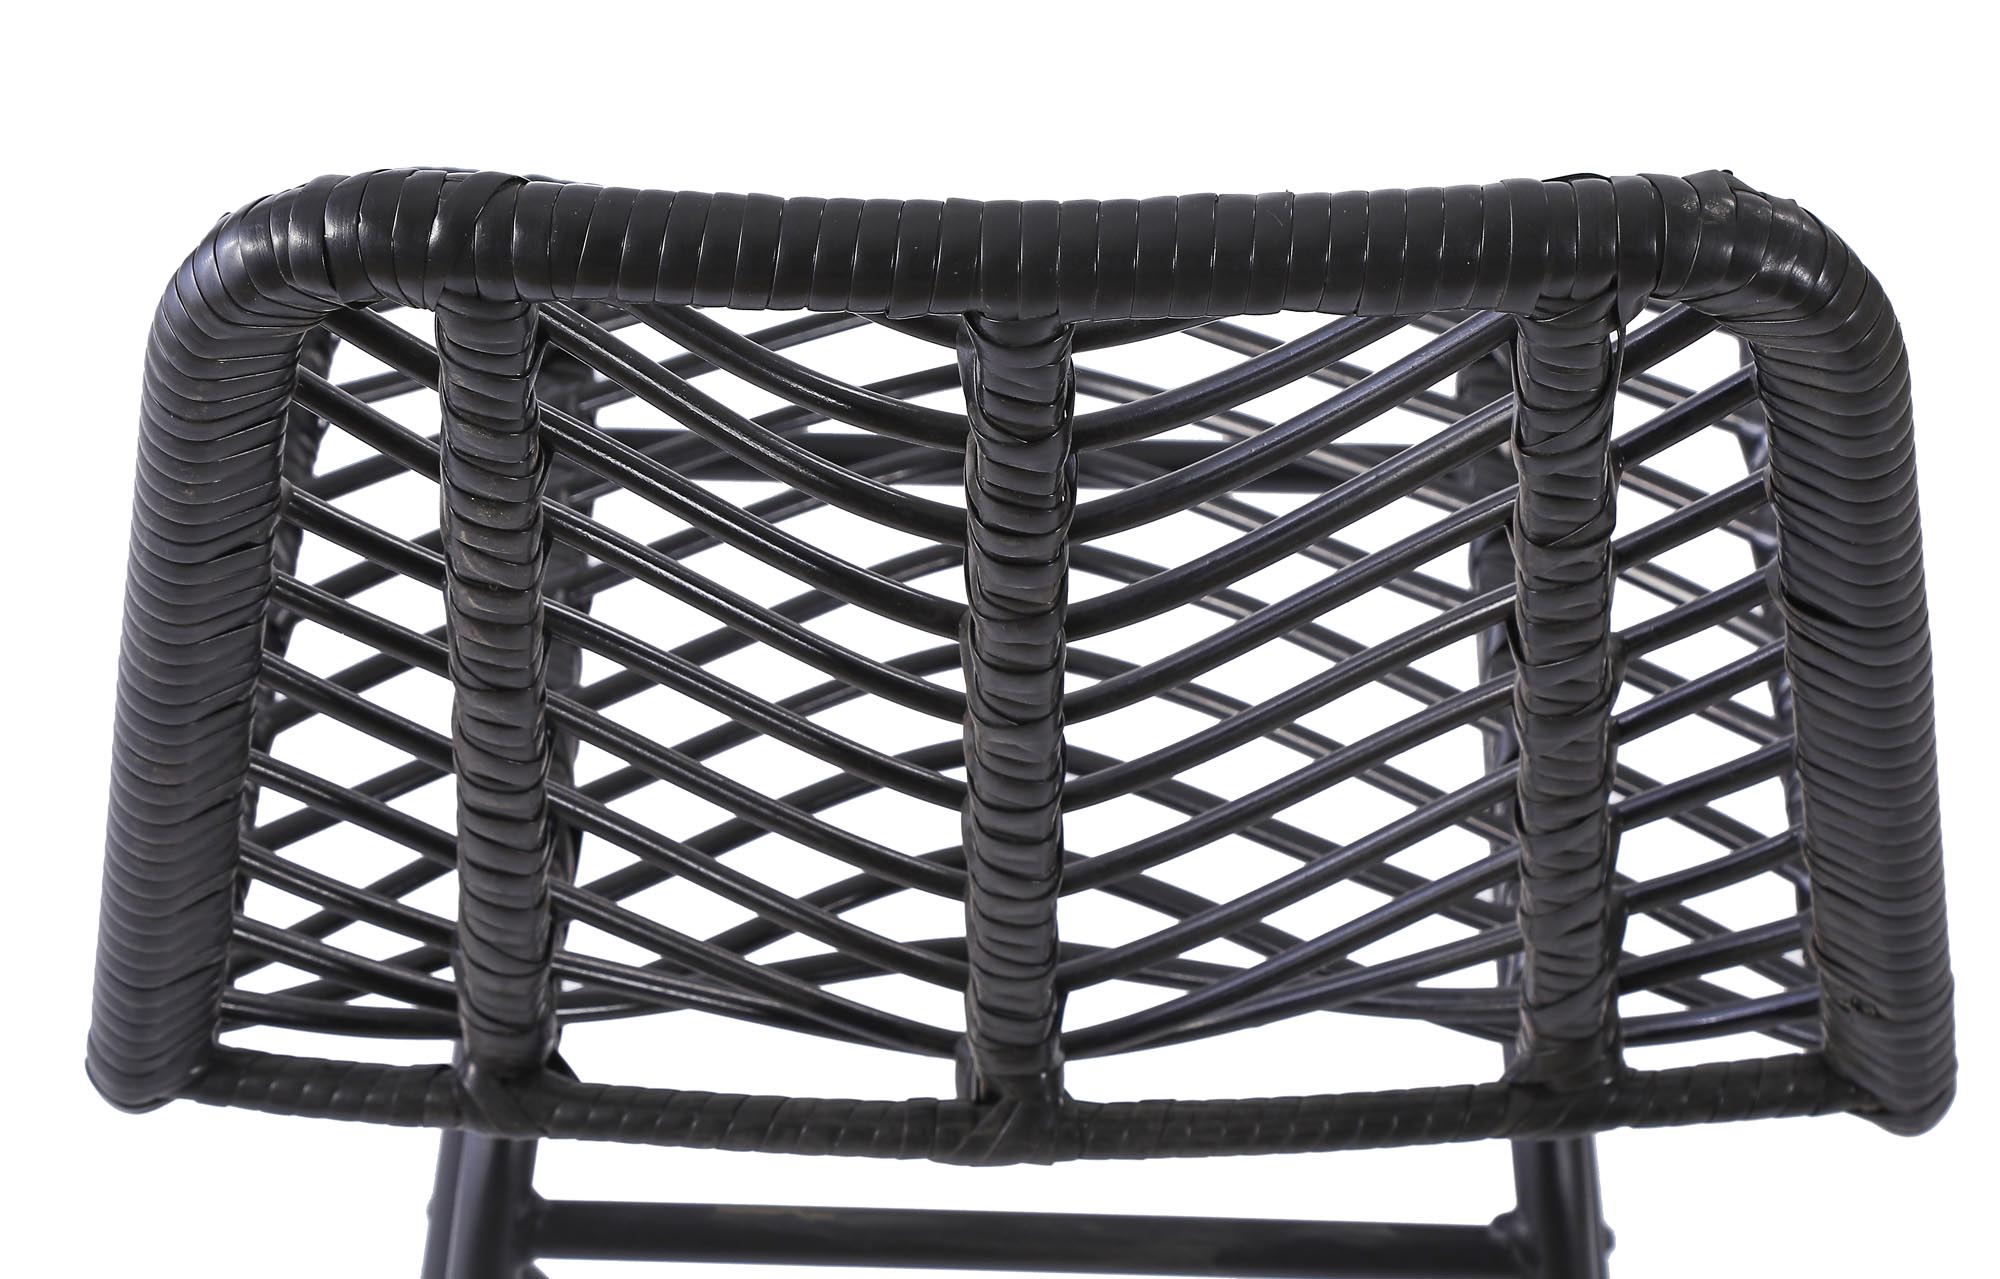 H97 Barová židle Černý  (1p=4szt) h97 Barová židle Černý